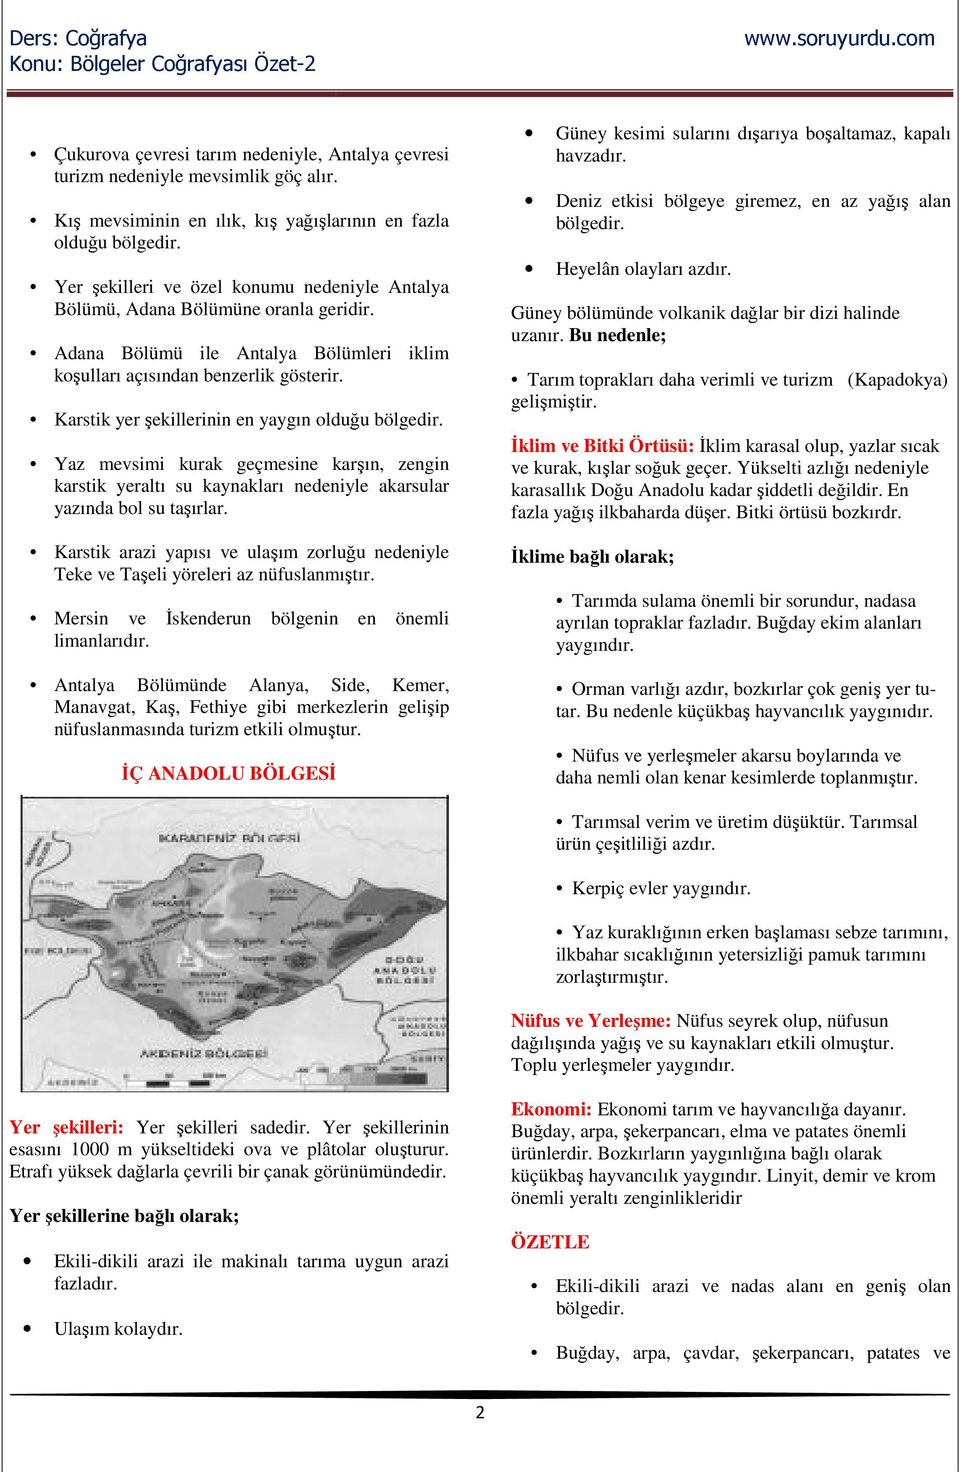 Adana Bölümü ile Antalya Bölümleri iklim koşulları açısından benzerlik gösterir.